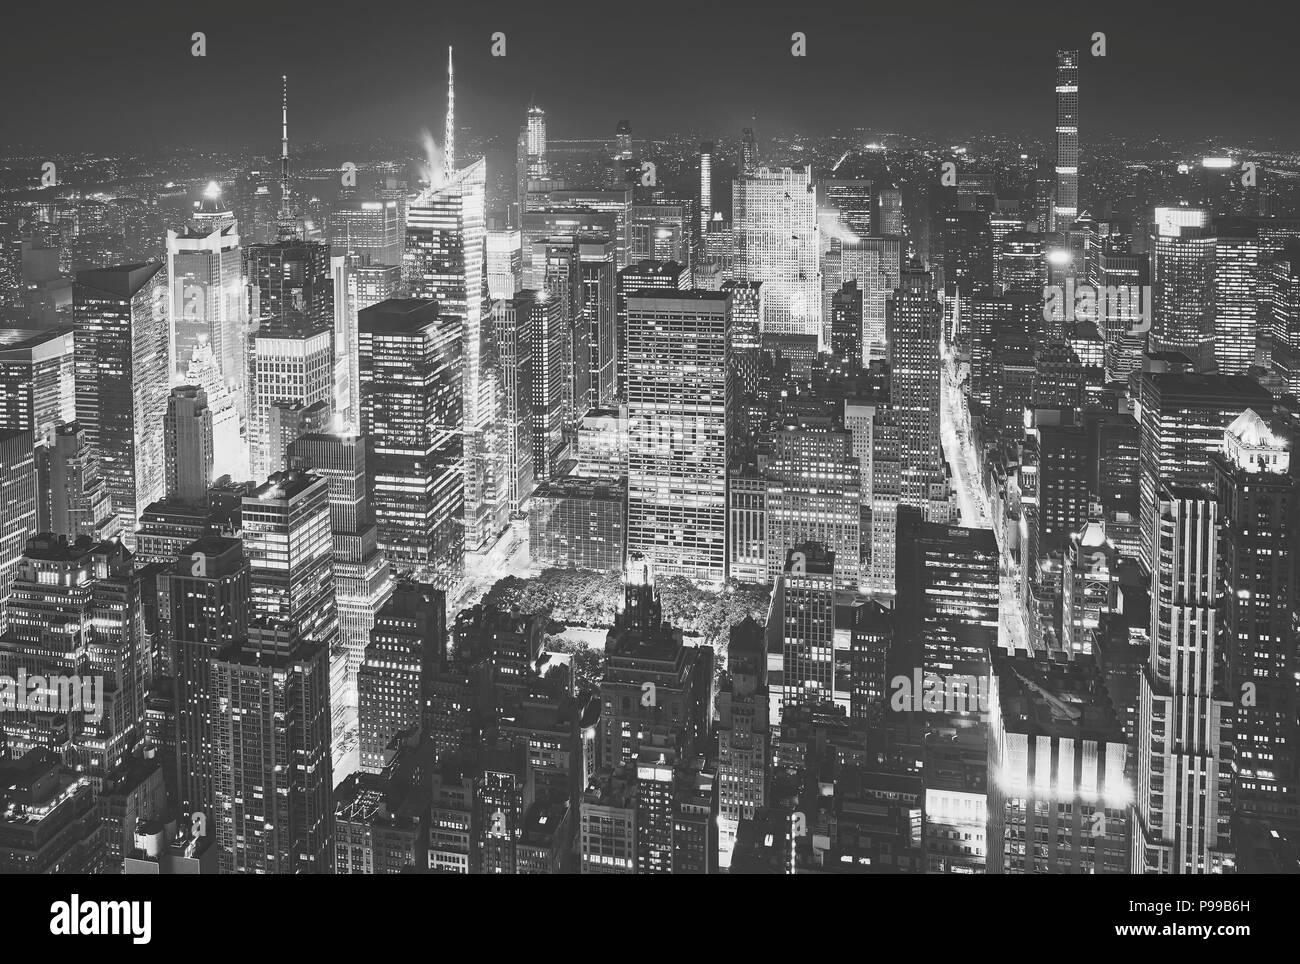 Bianco e nero fotografia aerea di Manhattan, New York City, Stati Uniti d'America. Foto Stock